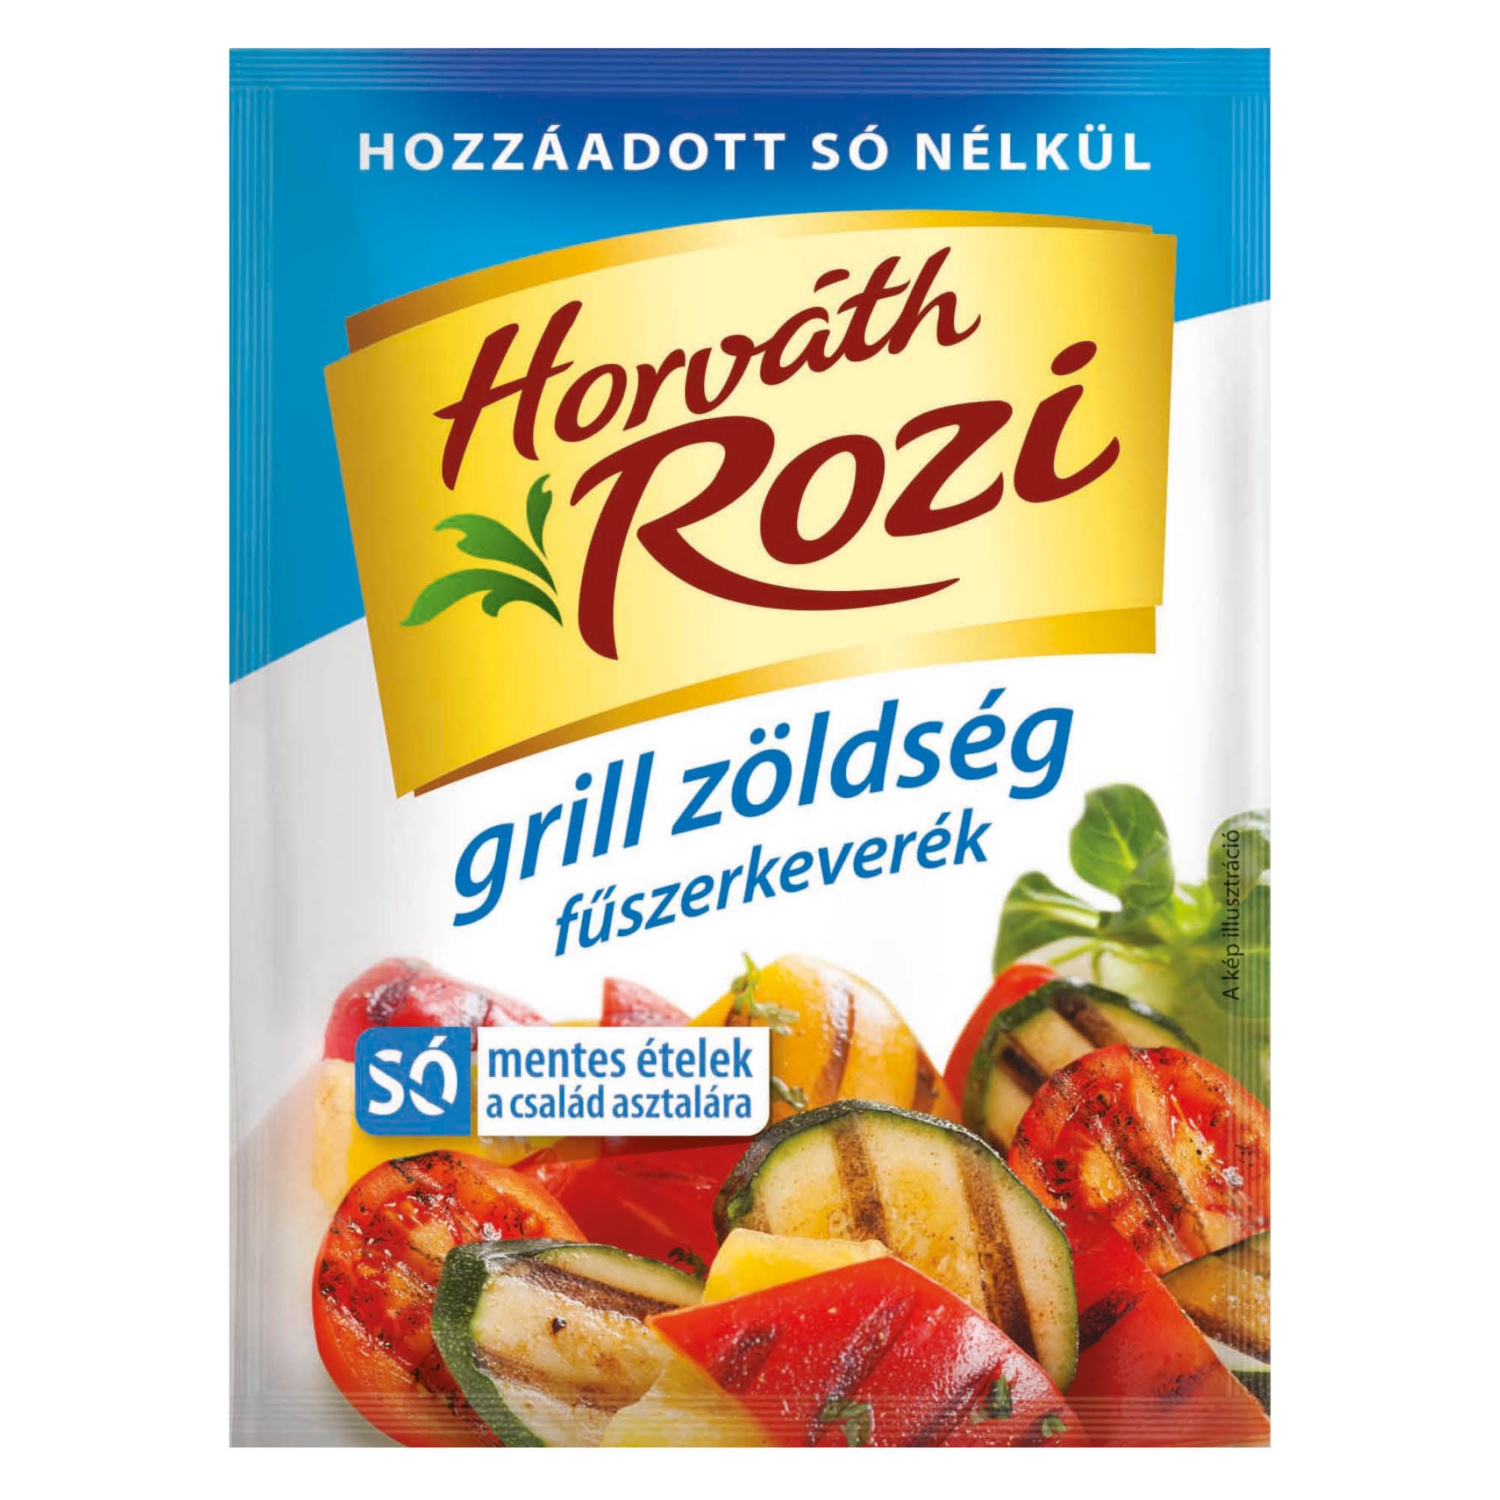 HORVÁTH ROZI Fűszerkeverék, 20 g, grill zöldség